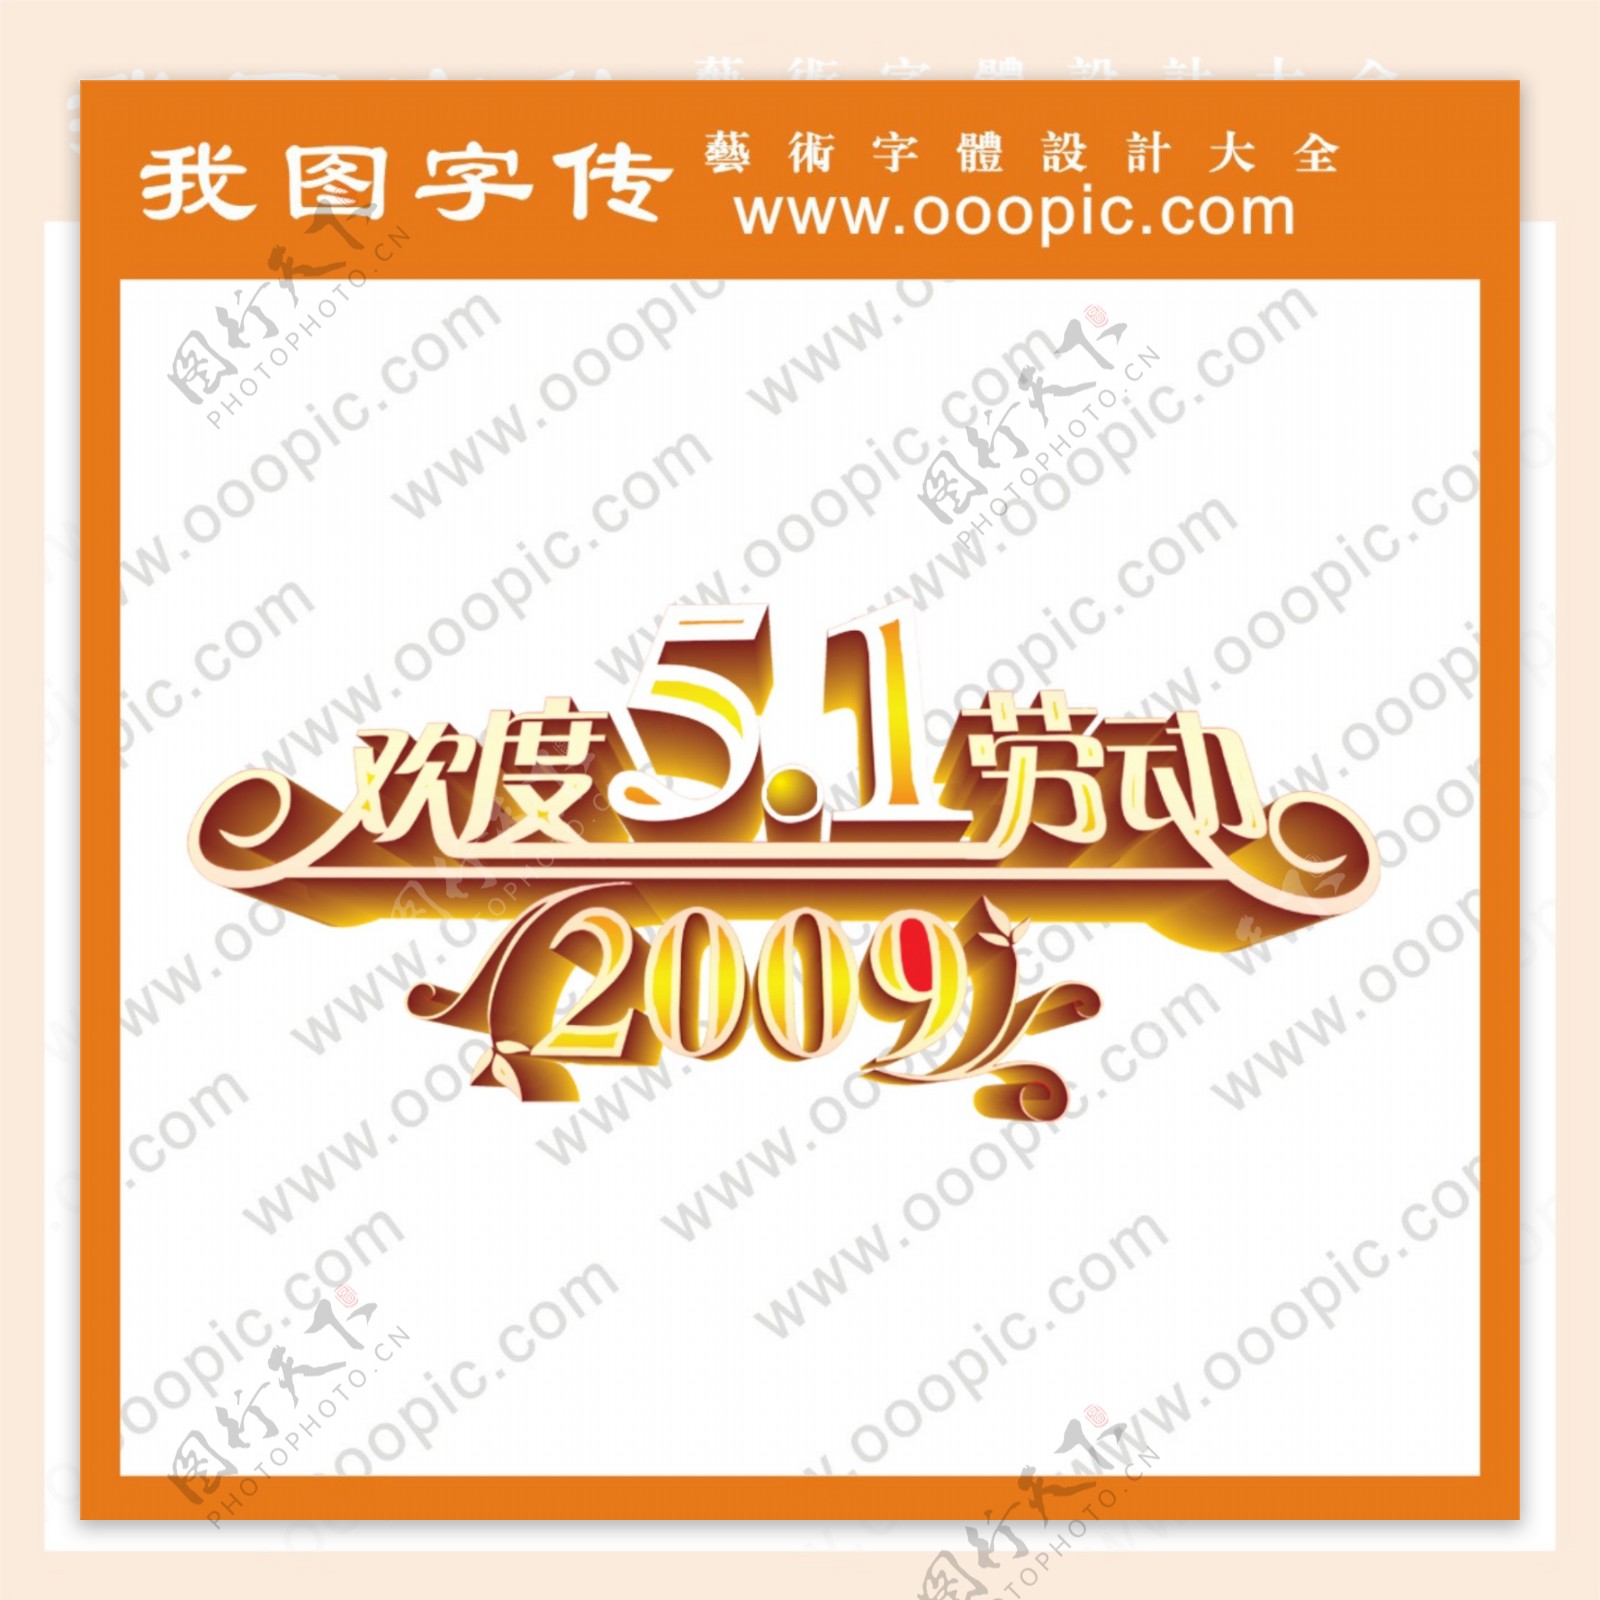 欢度五一劳动节2009艺术字字体设计中文字体中文字库字库